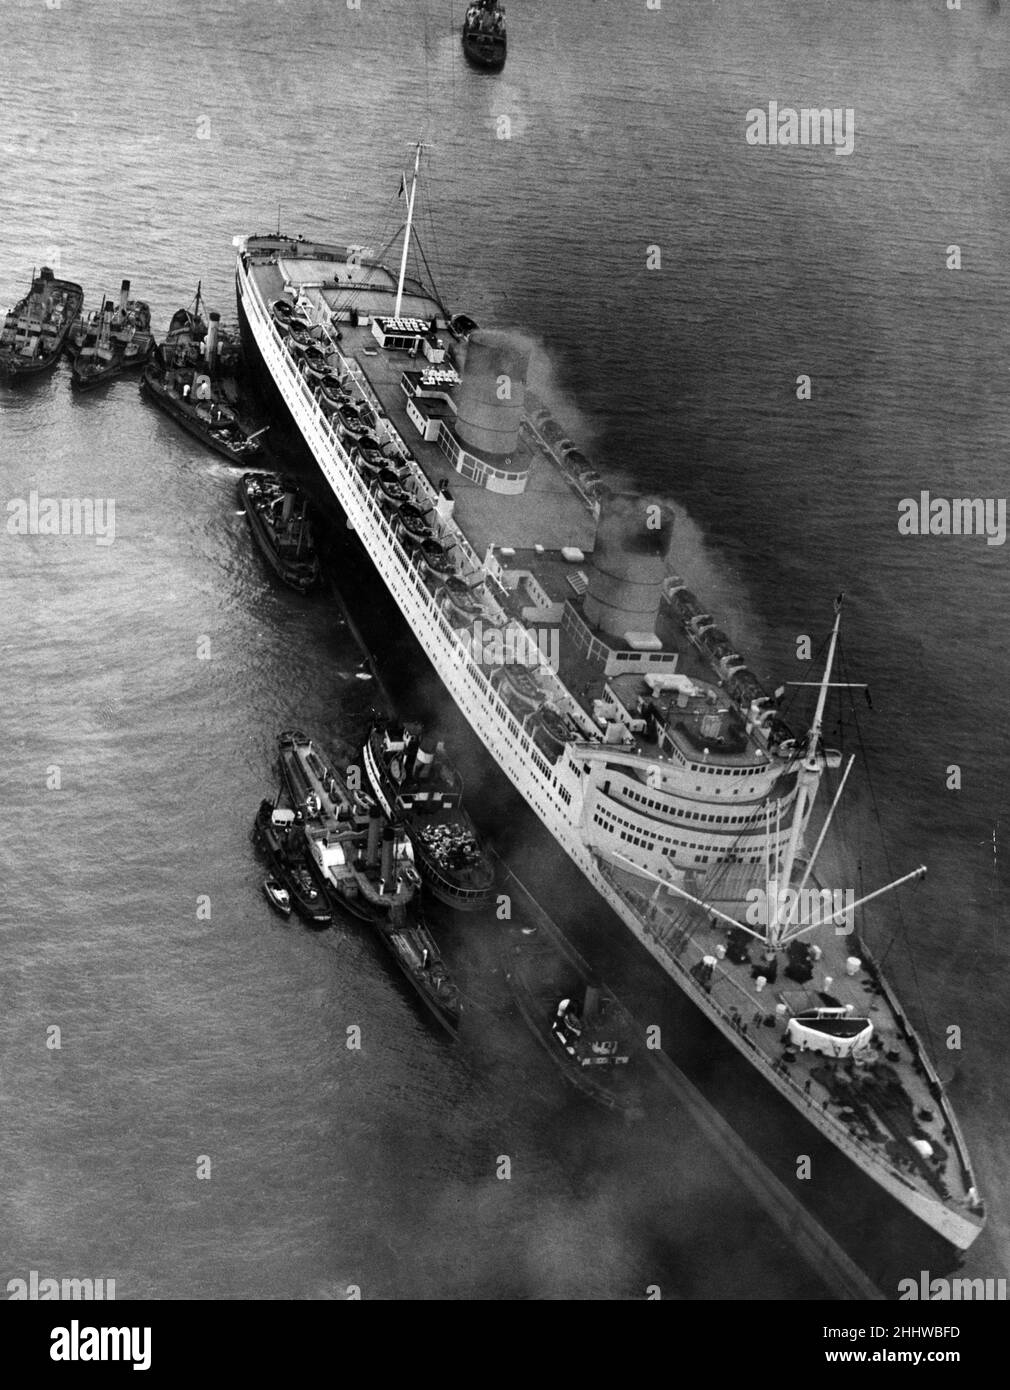 RMS Queen Elizabeth, Ozeandampfer der Cunard Line. Im Februar 1940 trat sie erstmals als Truppenschiff im Zweiten Weltkrieg in Dienst, und erst im Oktober 1946 diente sie in ihrer beabsichtigten Rolle als Ozeandampfer. Abgebildet. RMS Queen Elizabeth Aground in Southampton Waters, 15th. April 1947. Stockfoto